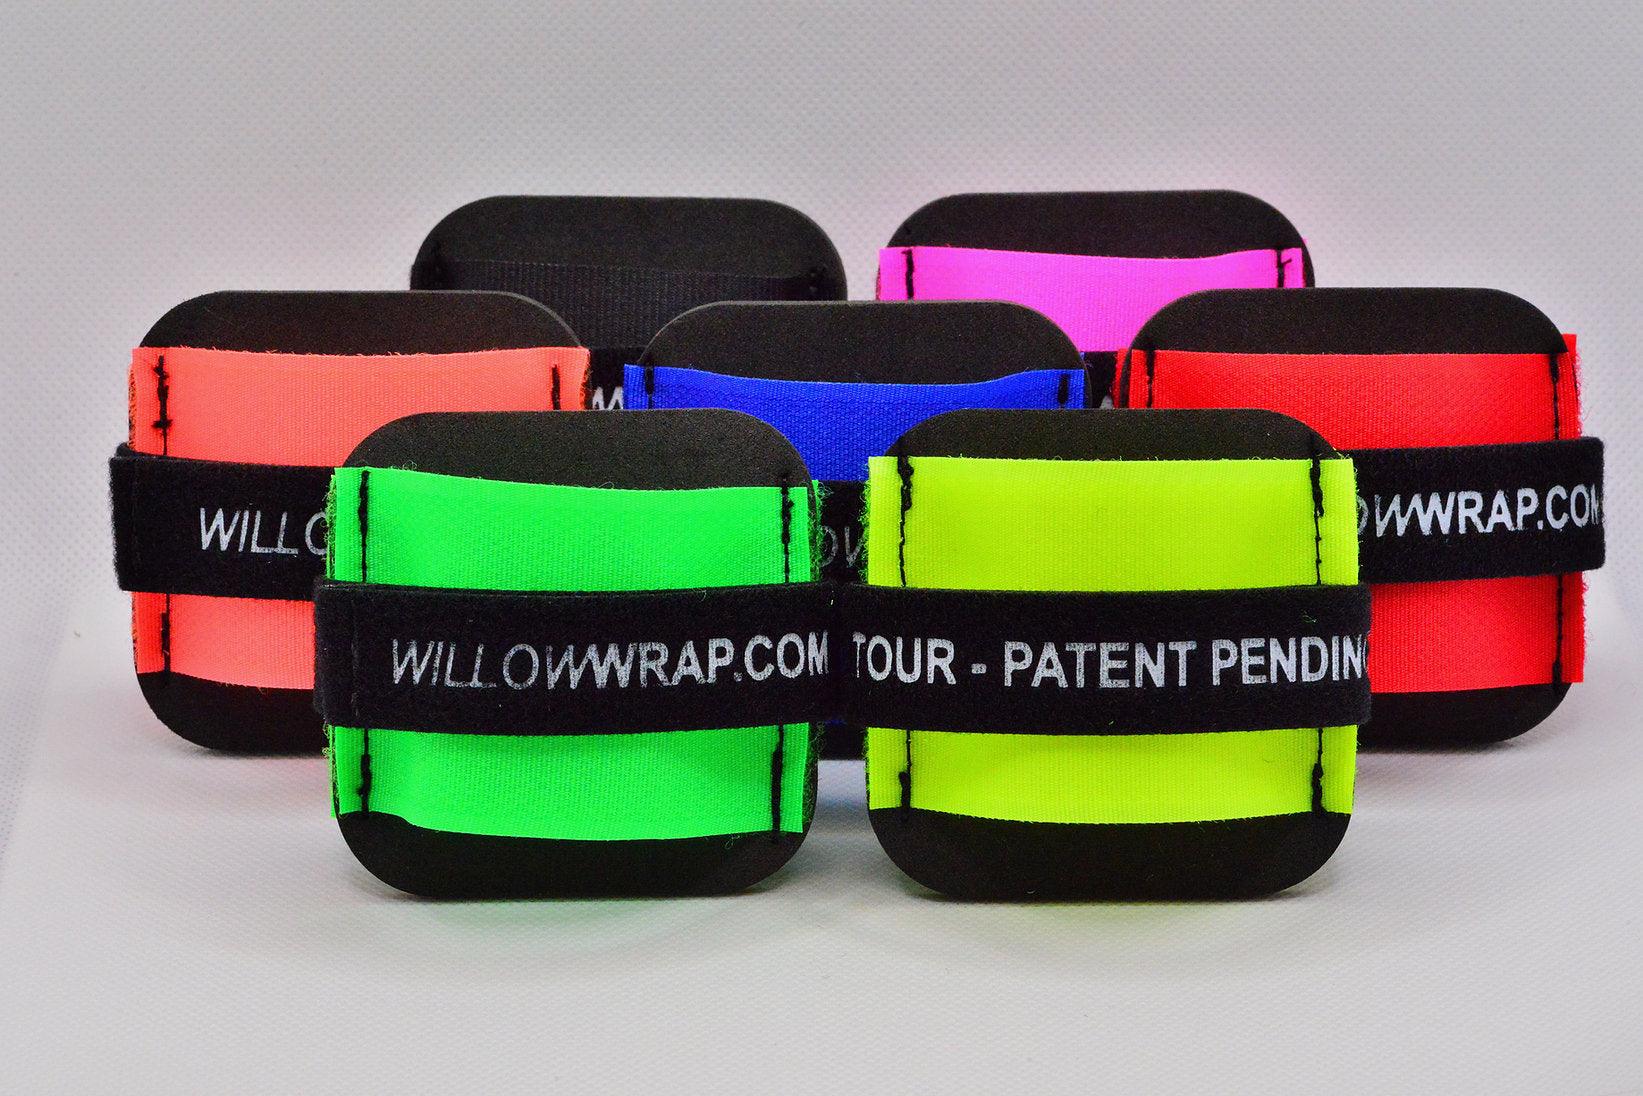 Willow Wrap Premium Ski Ties